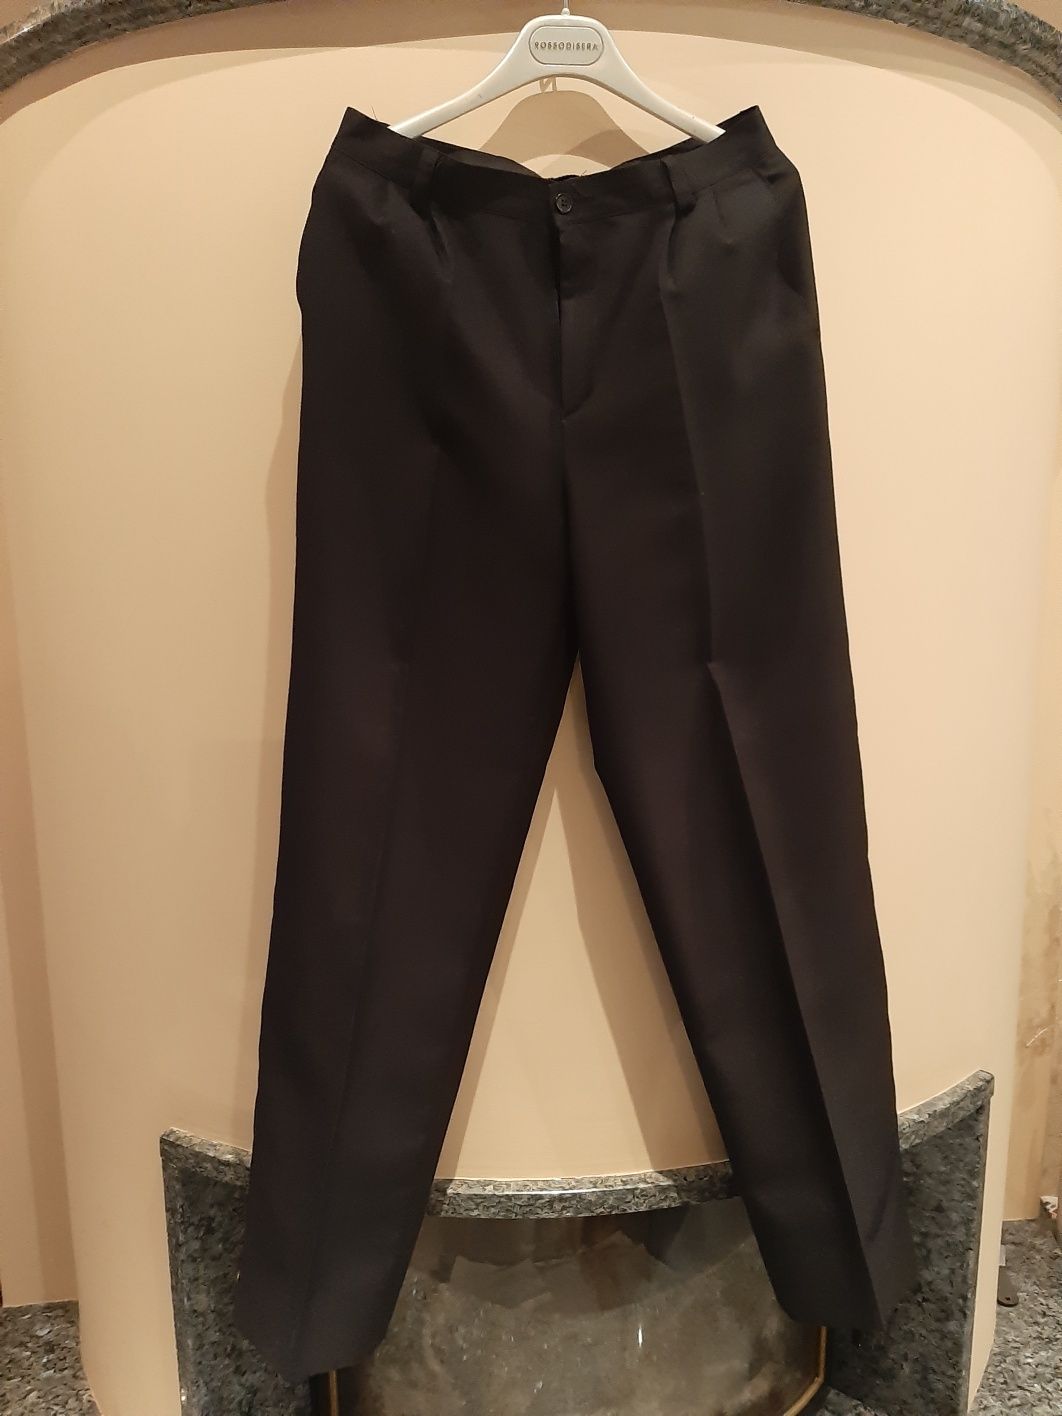 Spodnie męskie garnitur L M oakman wełna tkmaxx jakość tkanina komunia